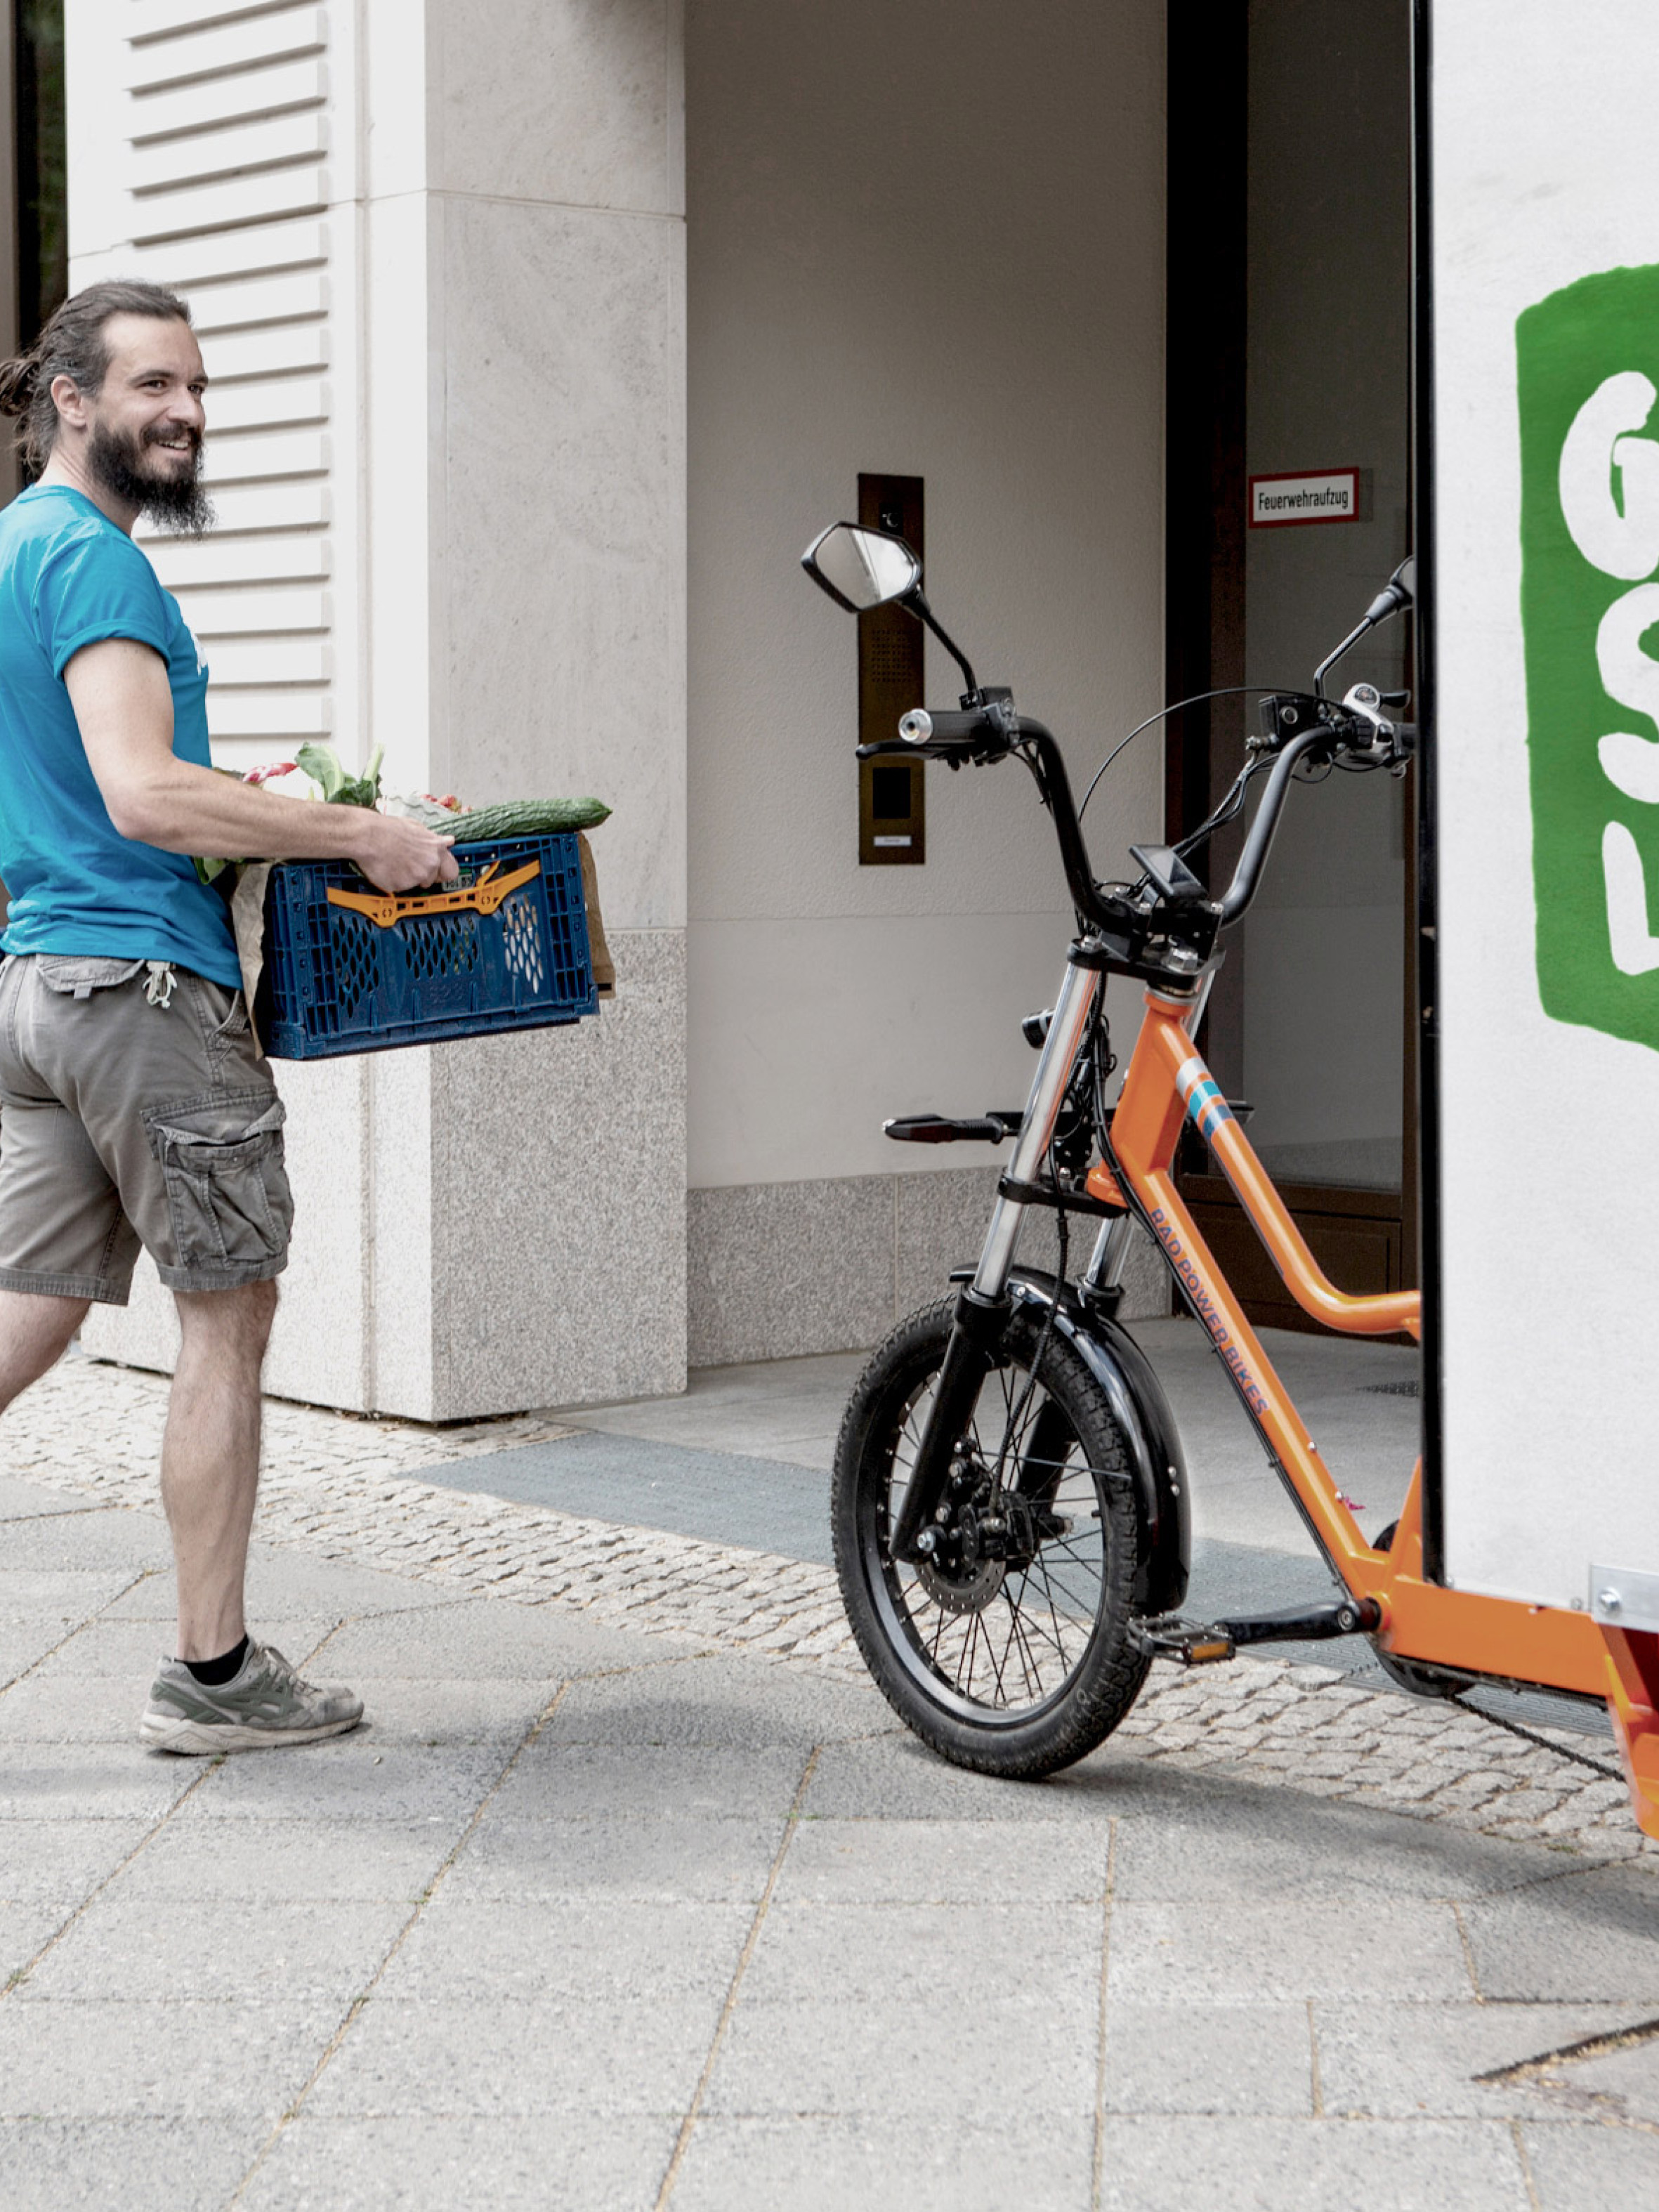 Lieferant und Cargobike mit der Aufschrift "Grüne Stadtlogistik"